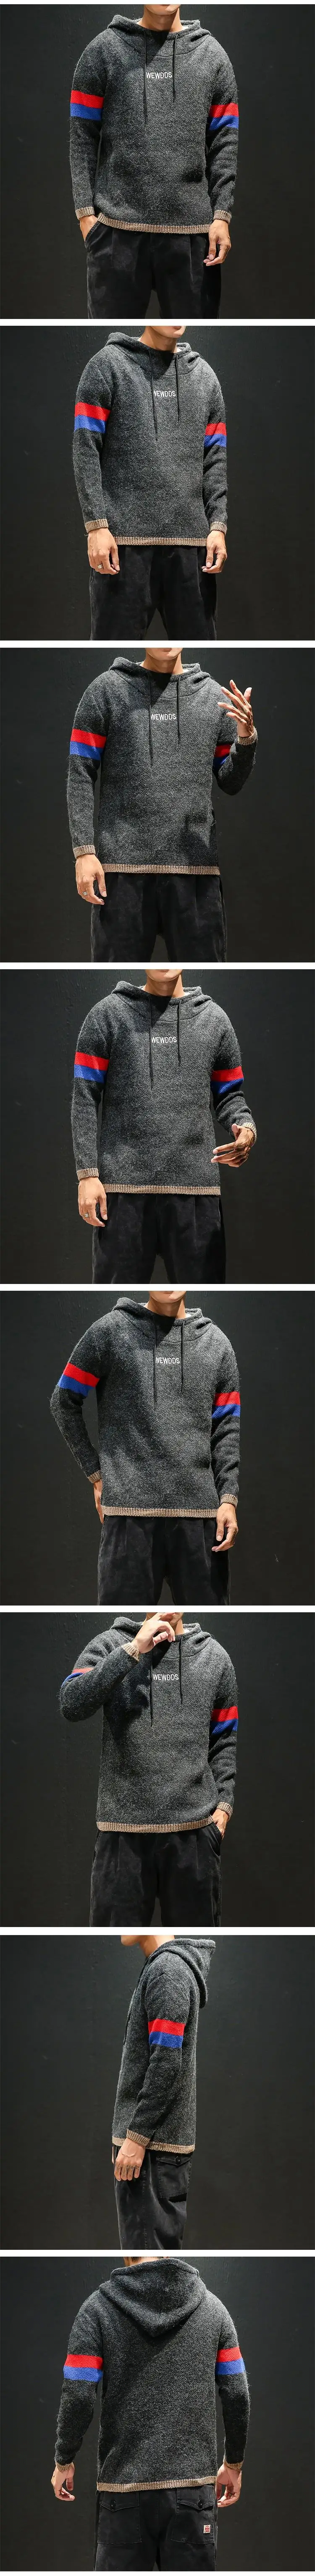 С капюшоном полосатый свитер мужской модный винтажный стиль мужские свитера и пуловеры Повседневный осенний свитер Knitted вязаный